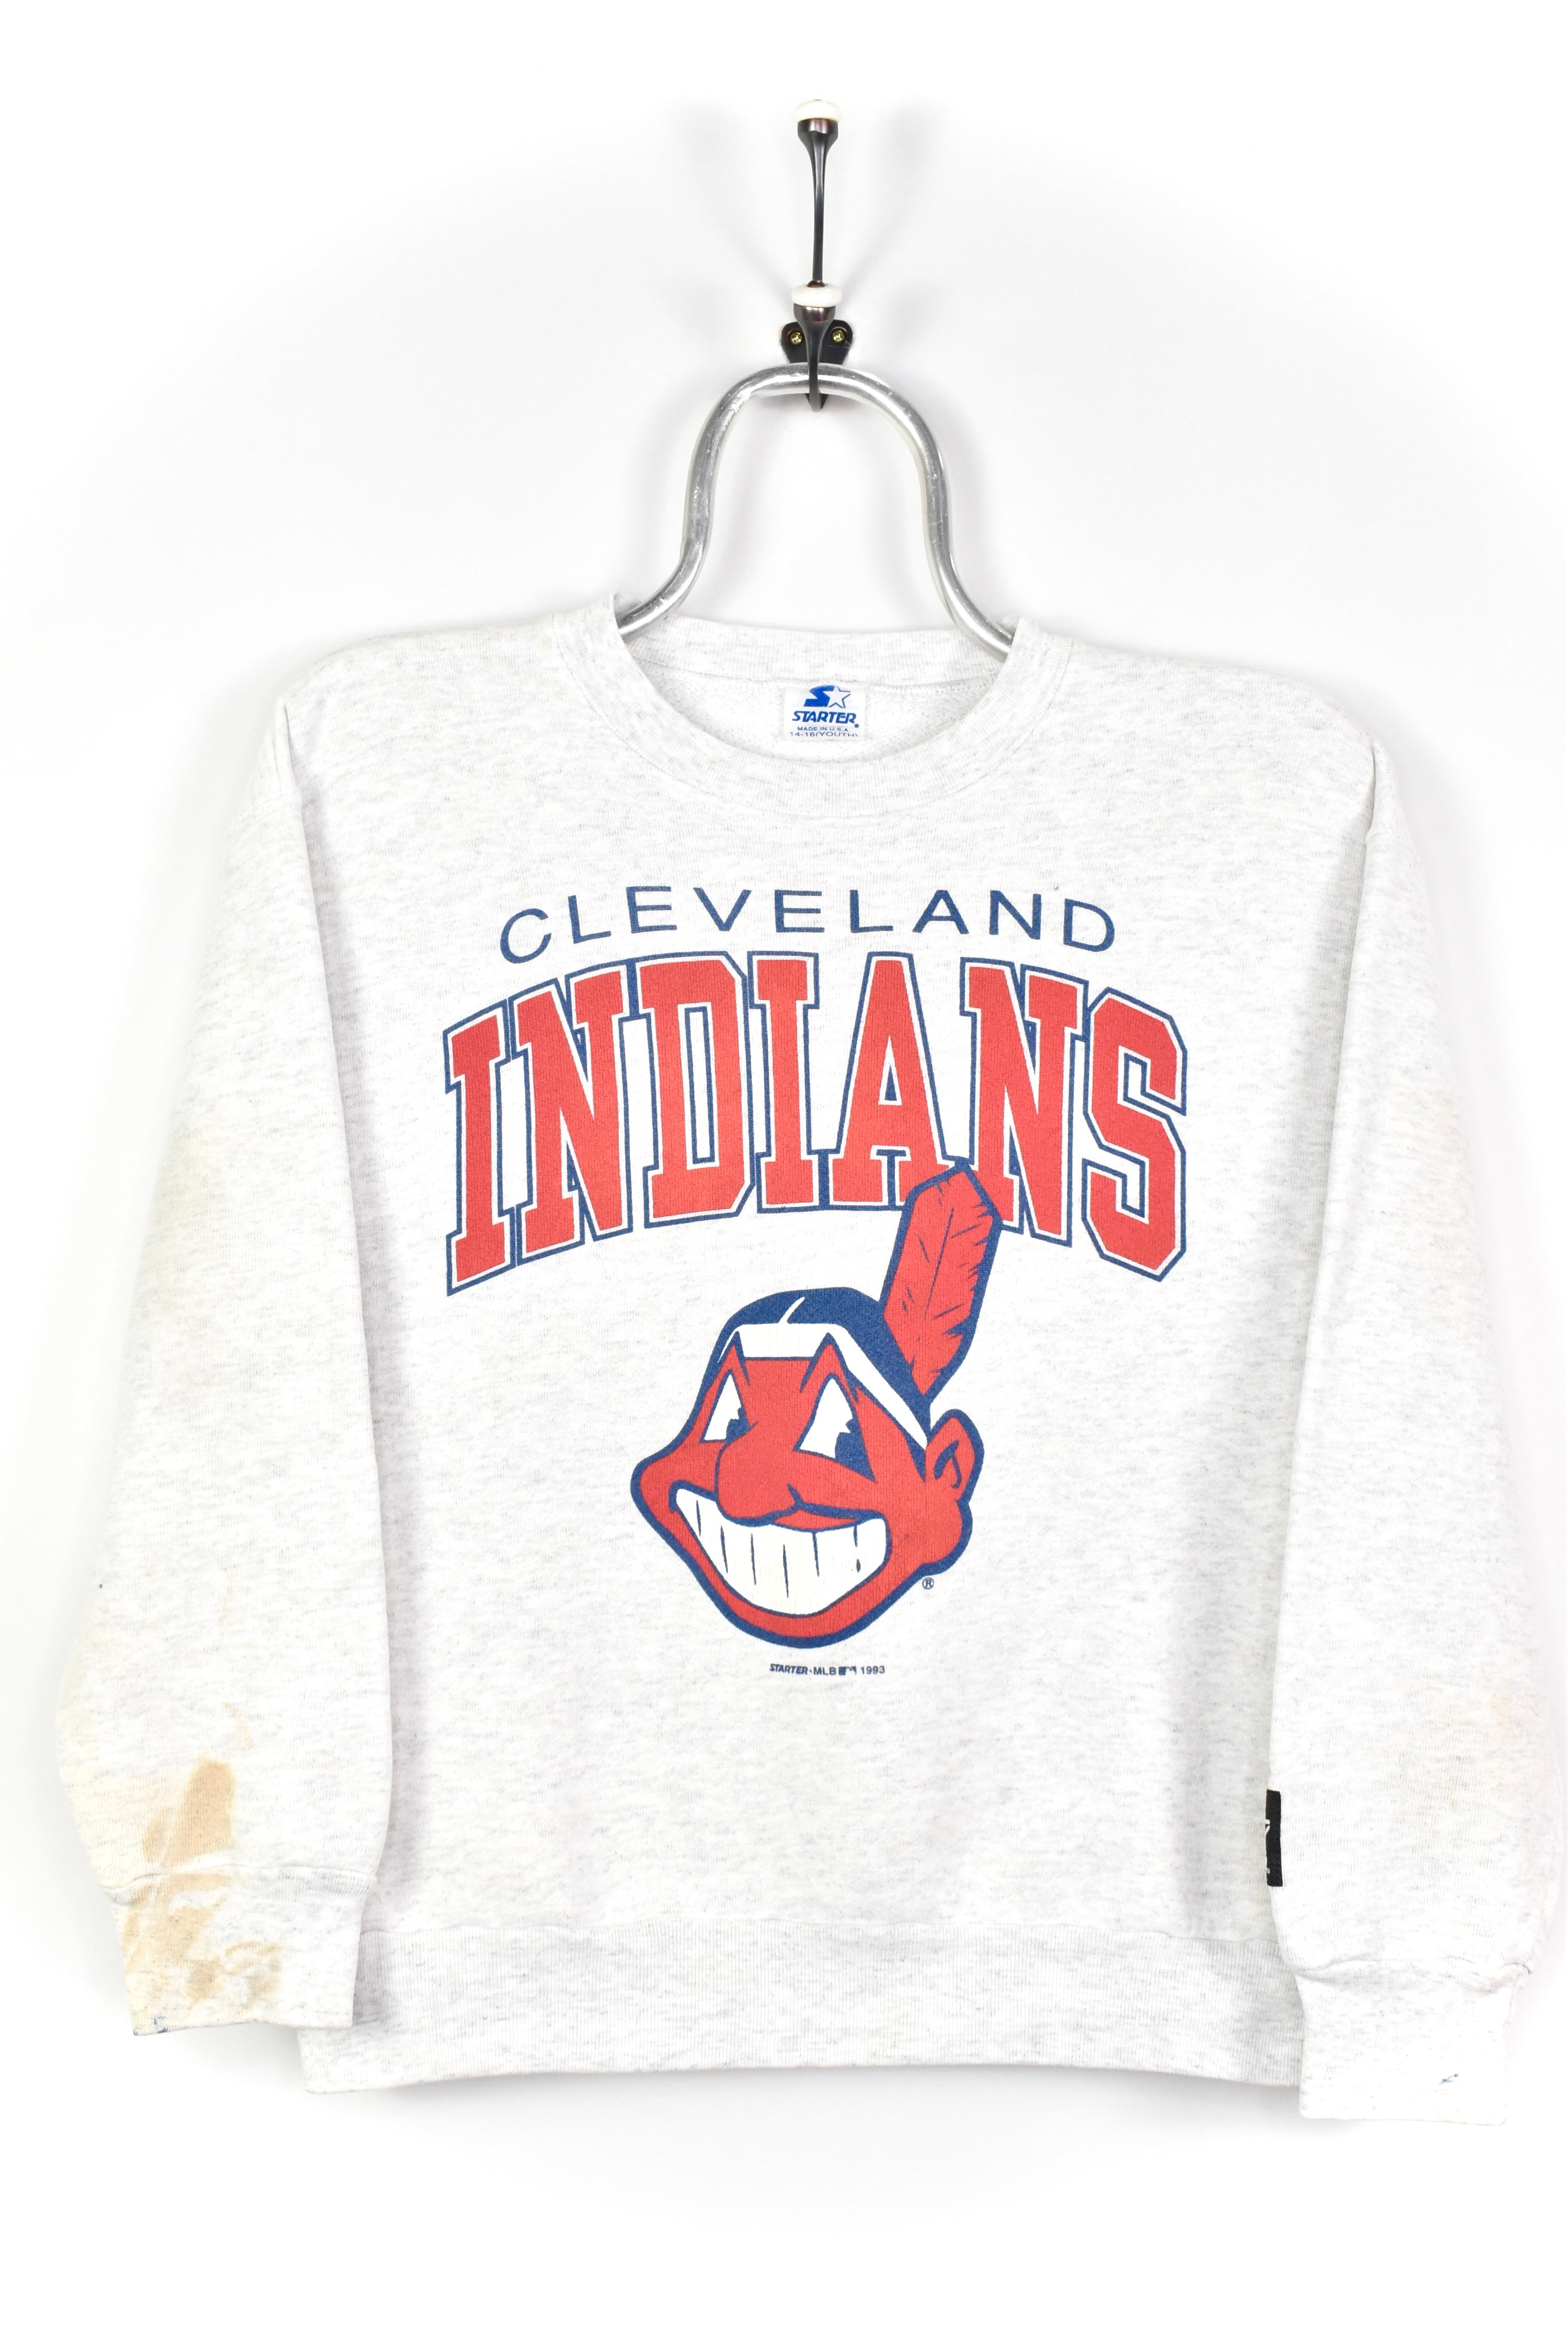 Vintage Indians Cleveland MBL Starter Baseball Jersey Shirt 